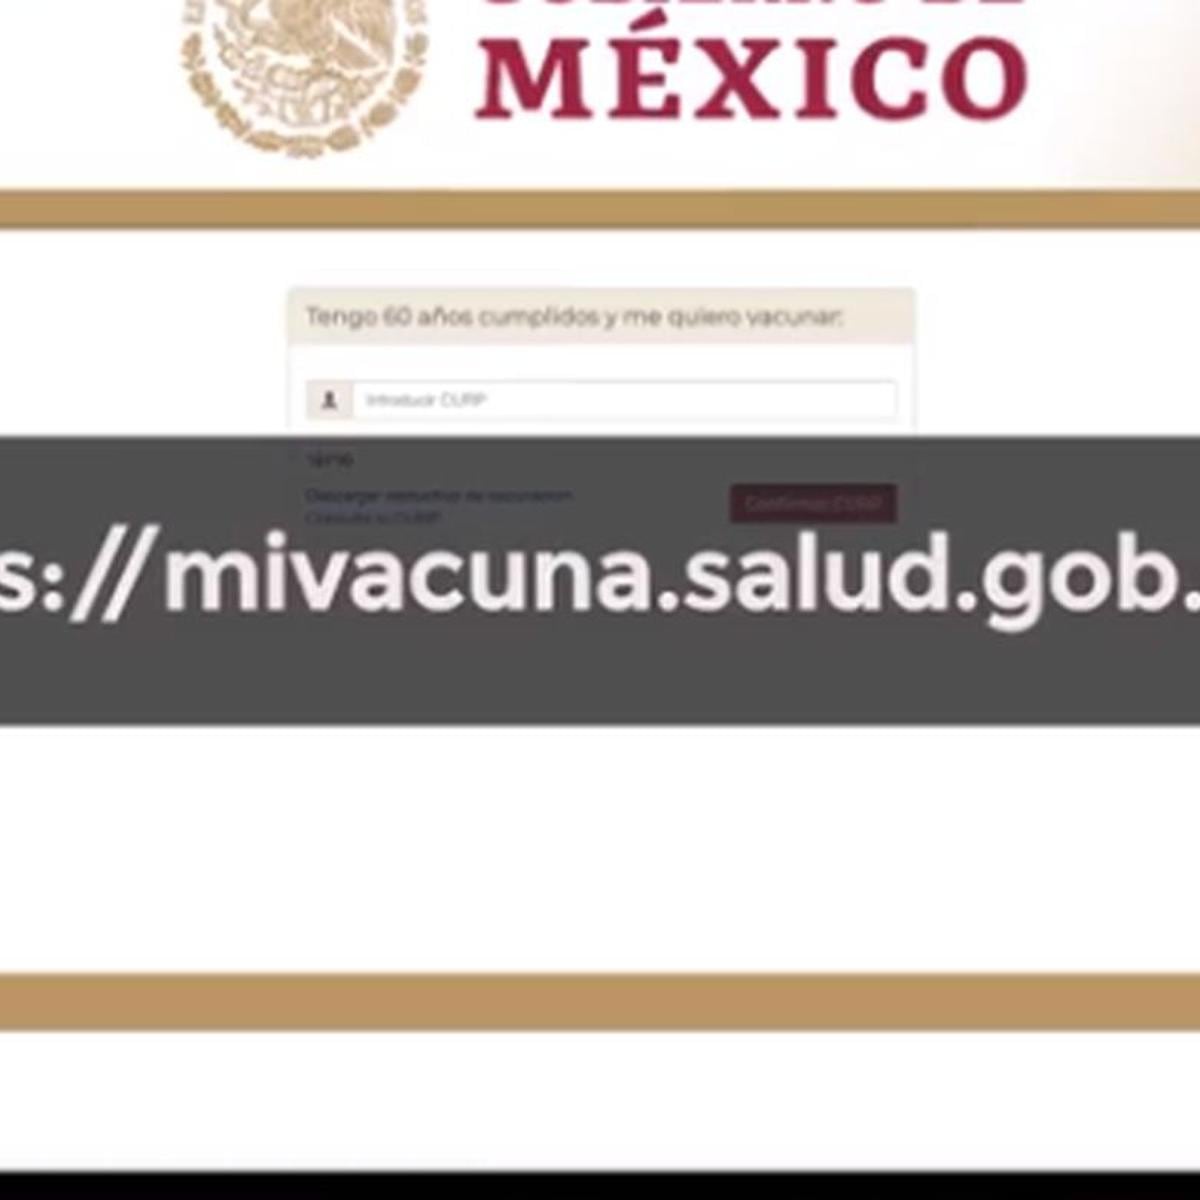 AQUÍ, Vacuna COVID-19 México: quiénes serán beneficiados y cómo registrarte  en .mx si eres un adulto mayor | Gobierno de México |  Coronavirus | Página inscripción de vacuna | Registro, Vacuna COVID